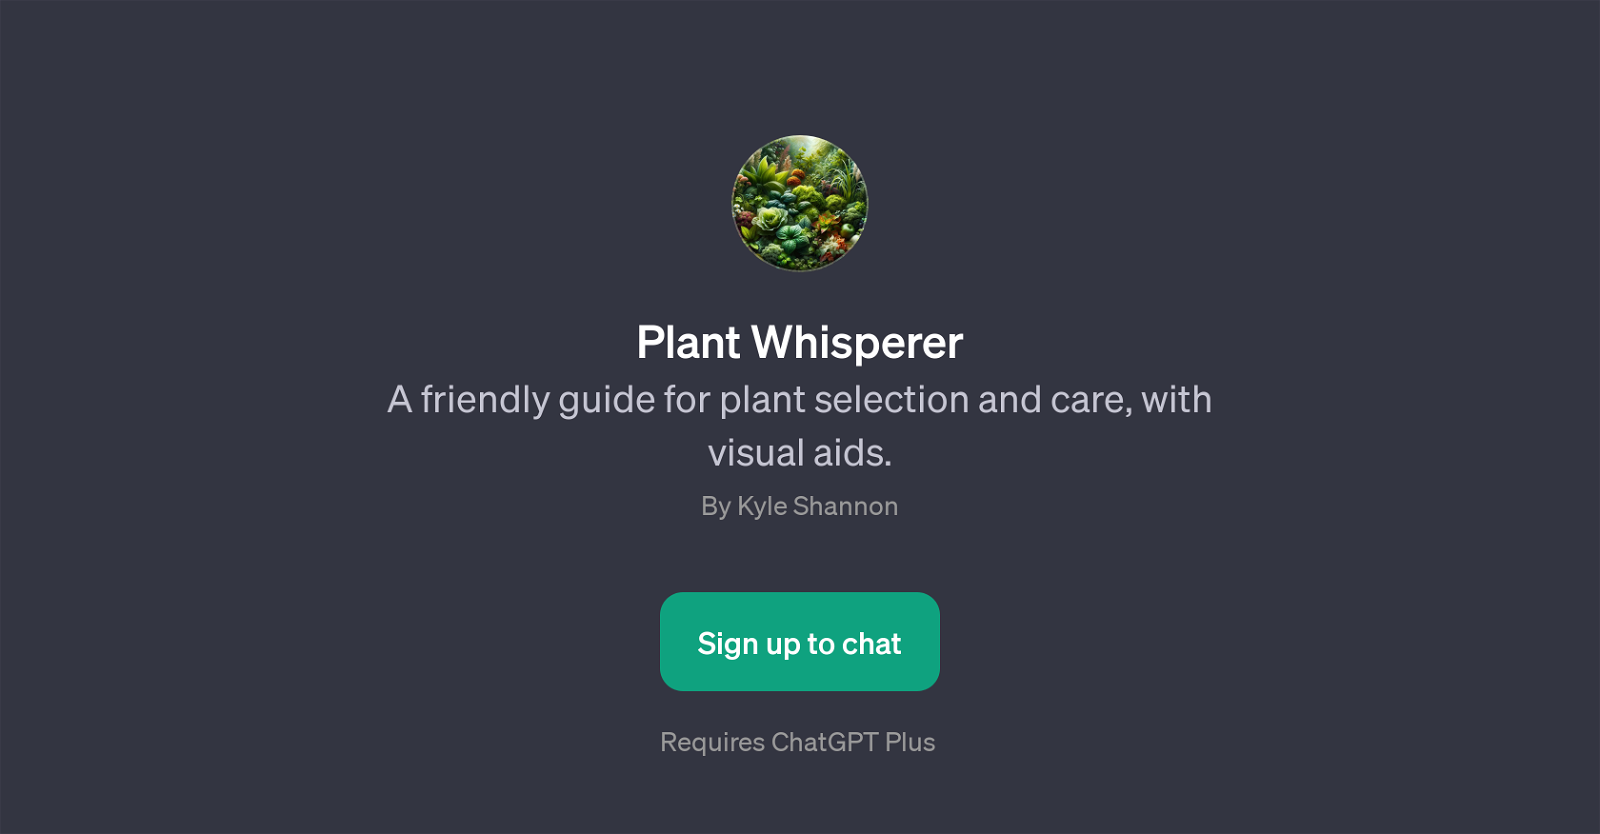 Plant Whisperer website